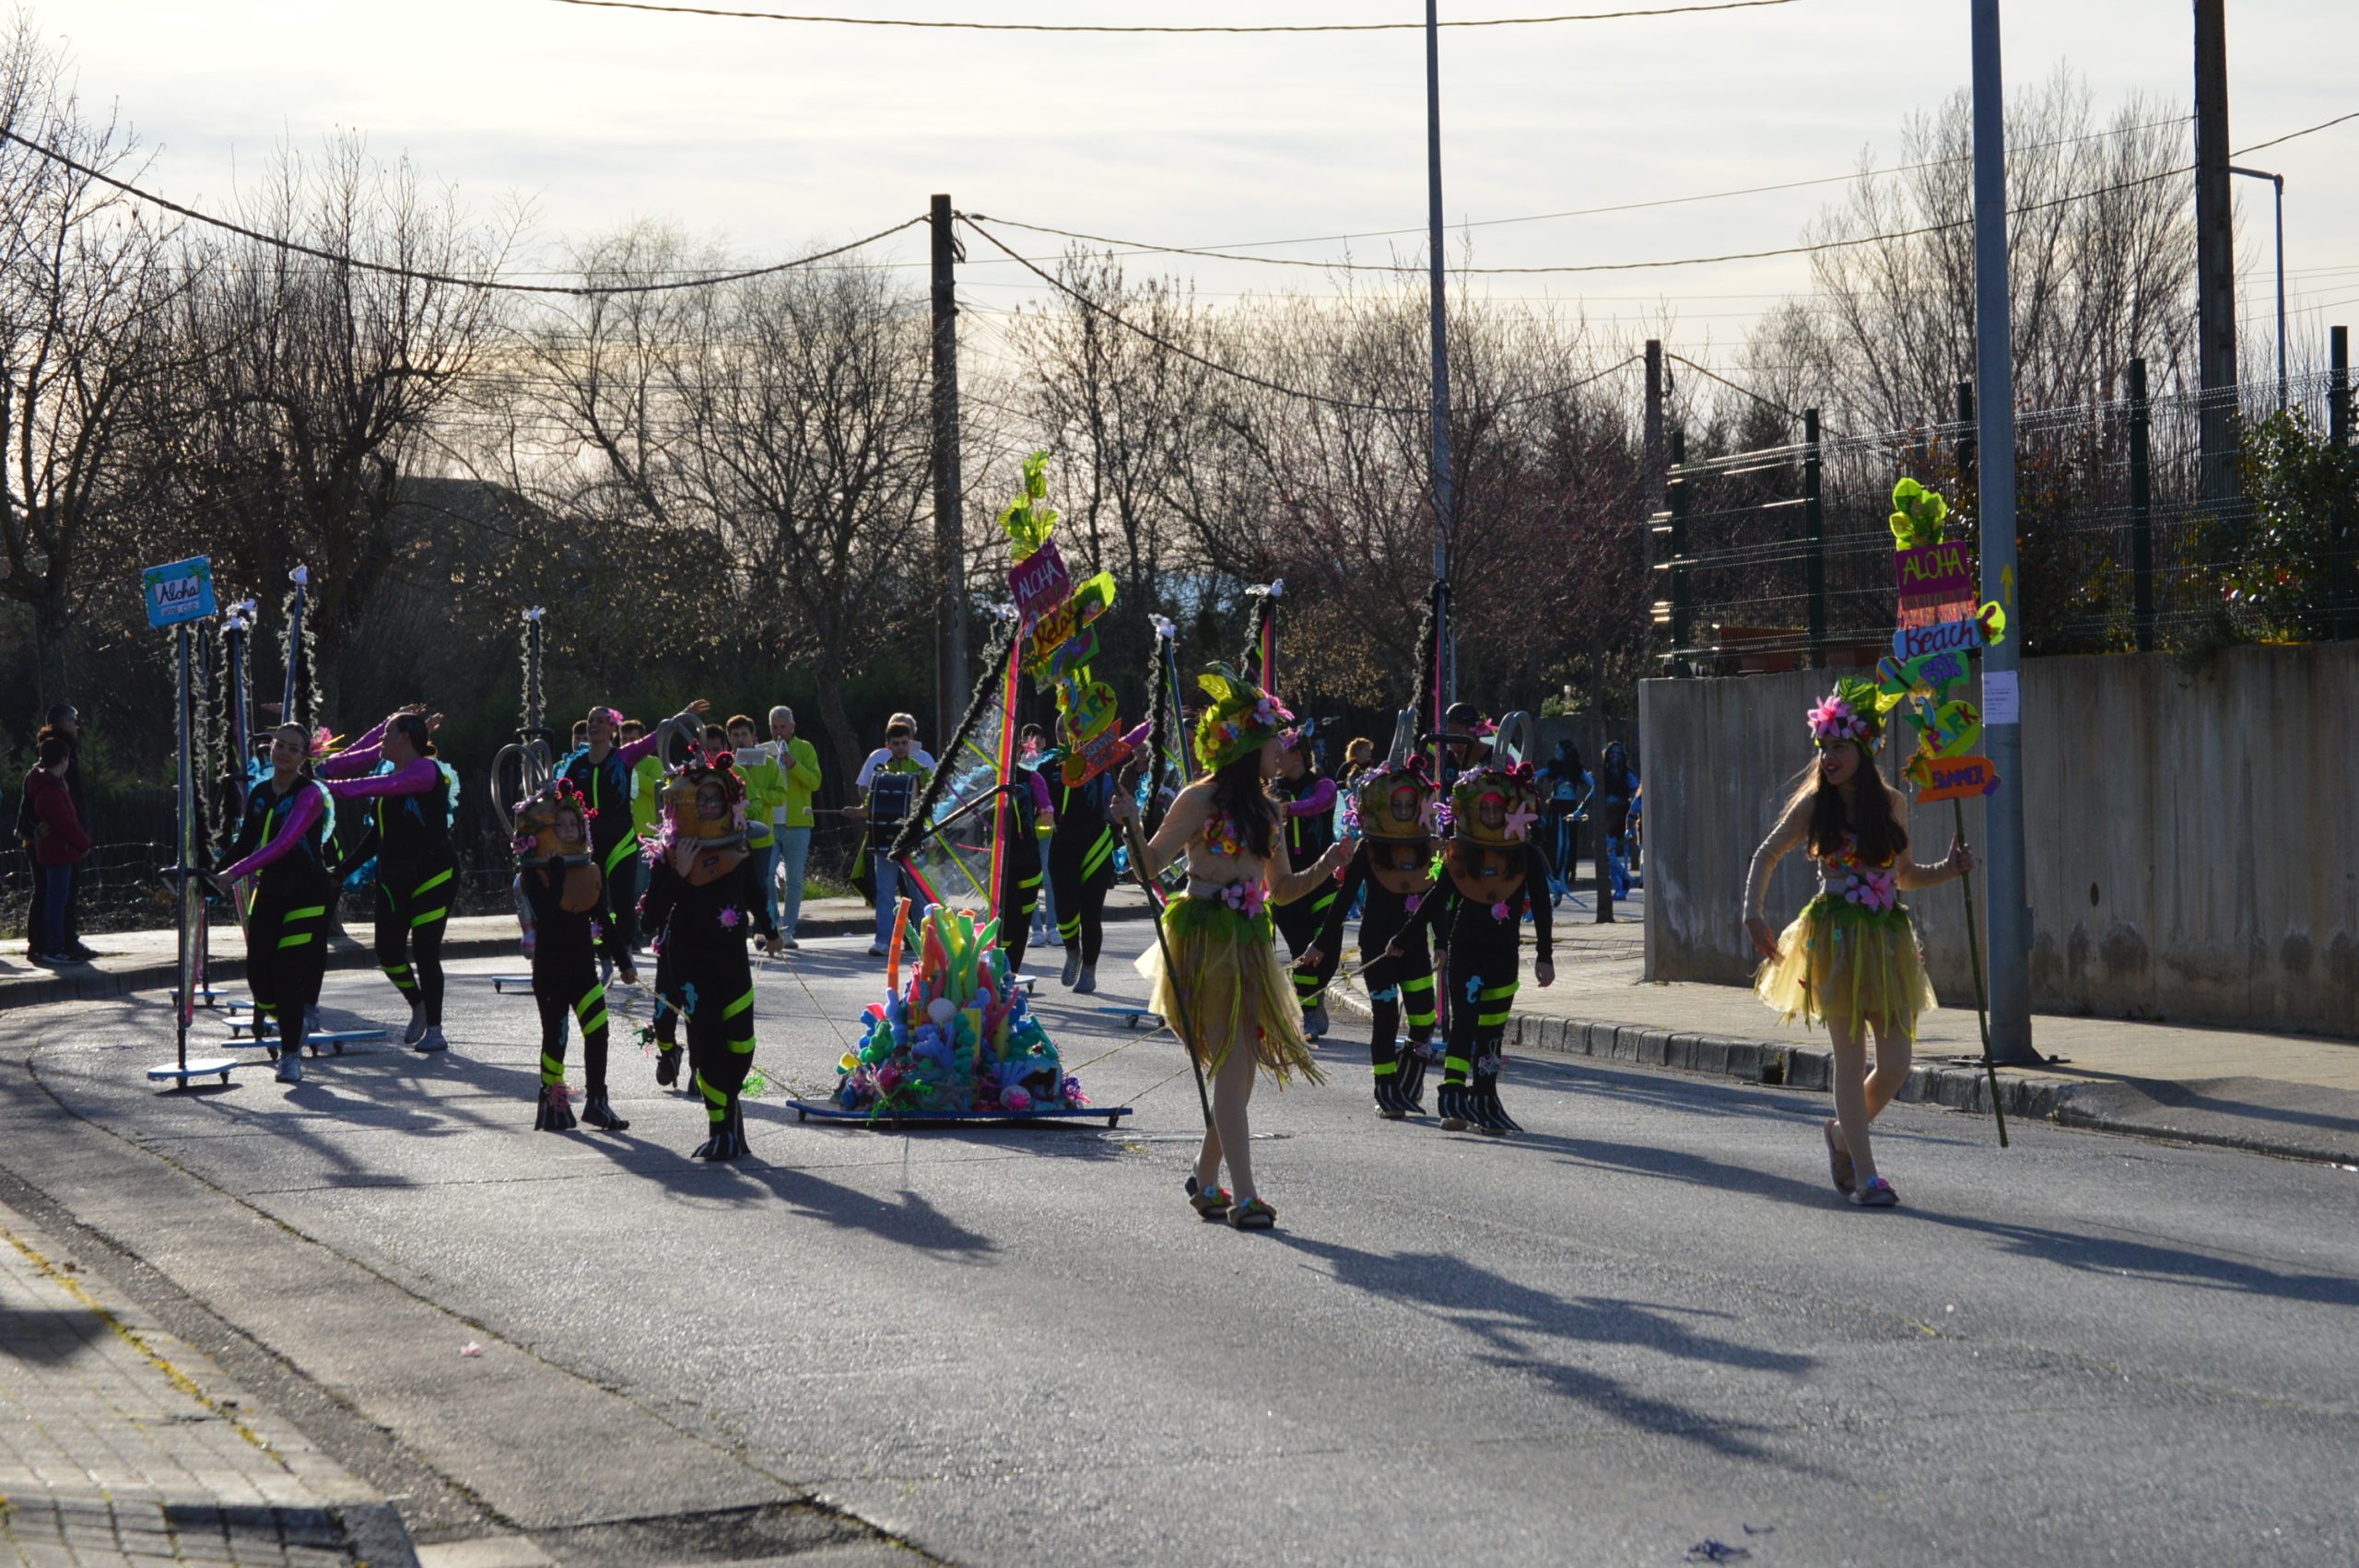 La alegría del Carnaval recorre Cubillos del Sil bajo un sol casi-primaveral 84